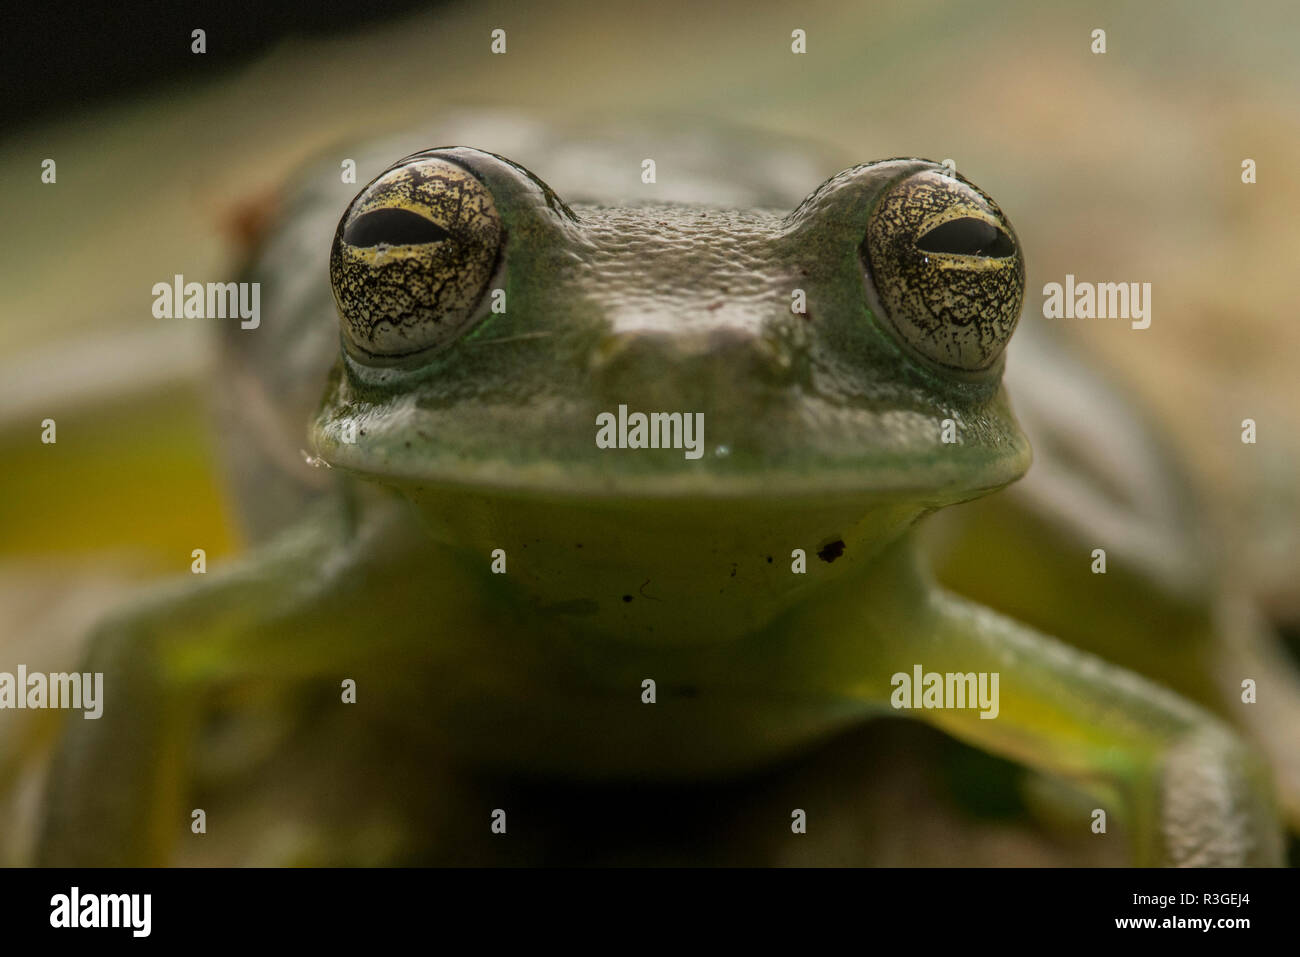 Une macro des yeux de Cochranella nola, un rare et menacé glass frog espèce endémique de Bolivie et du Pérou. Banque D'Images